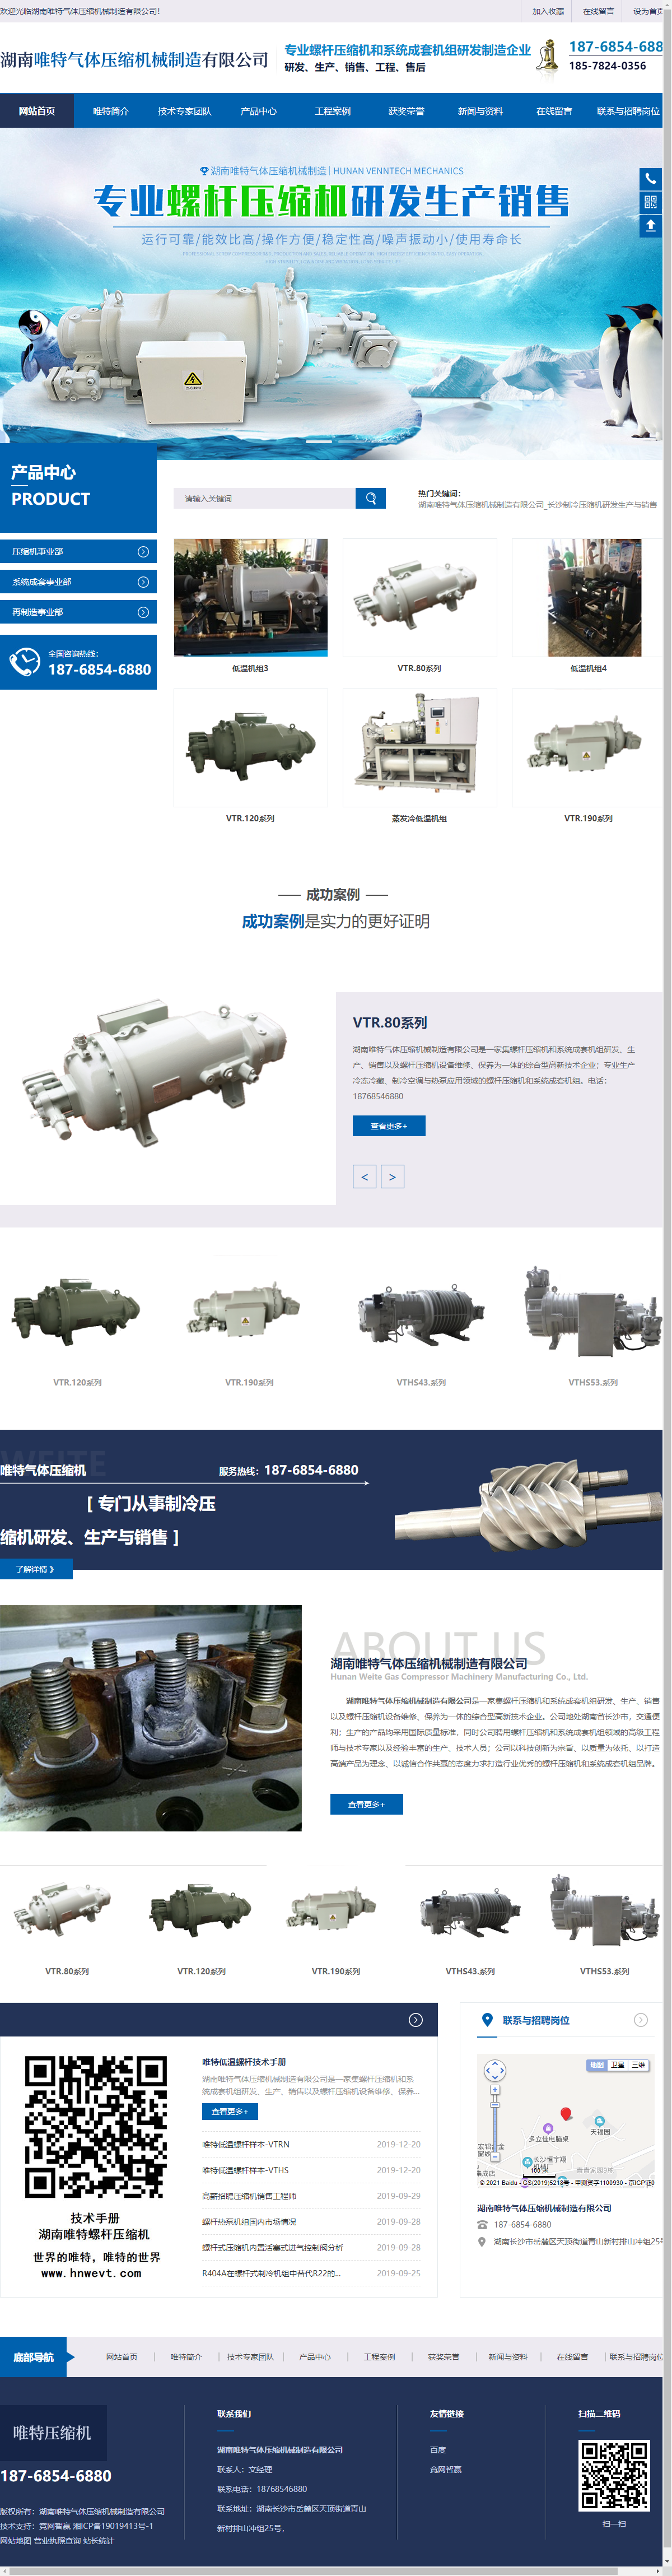 湖南唯特气体压缩机械制造有限公司网站案例